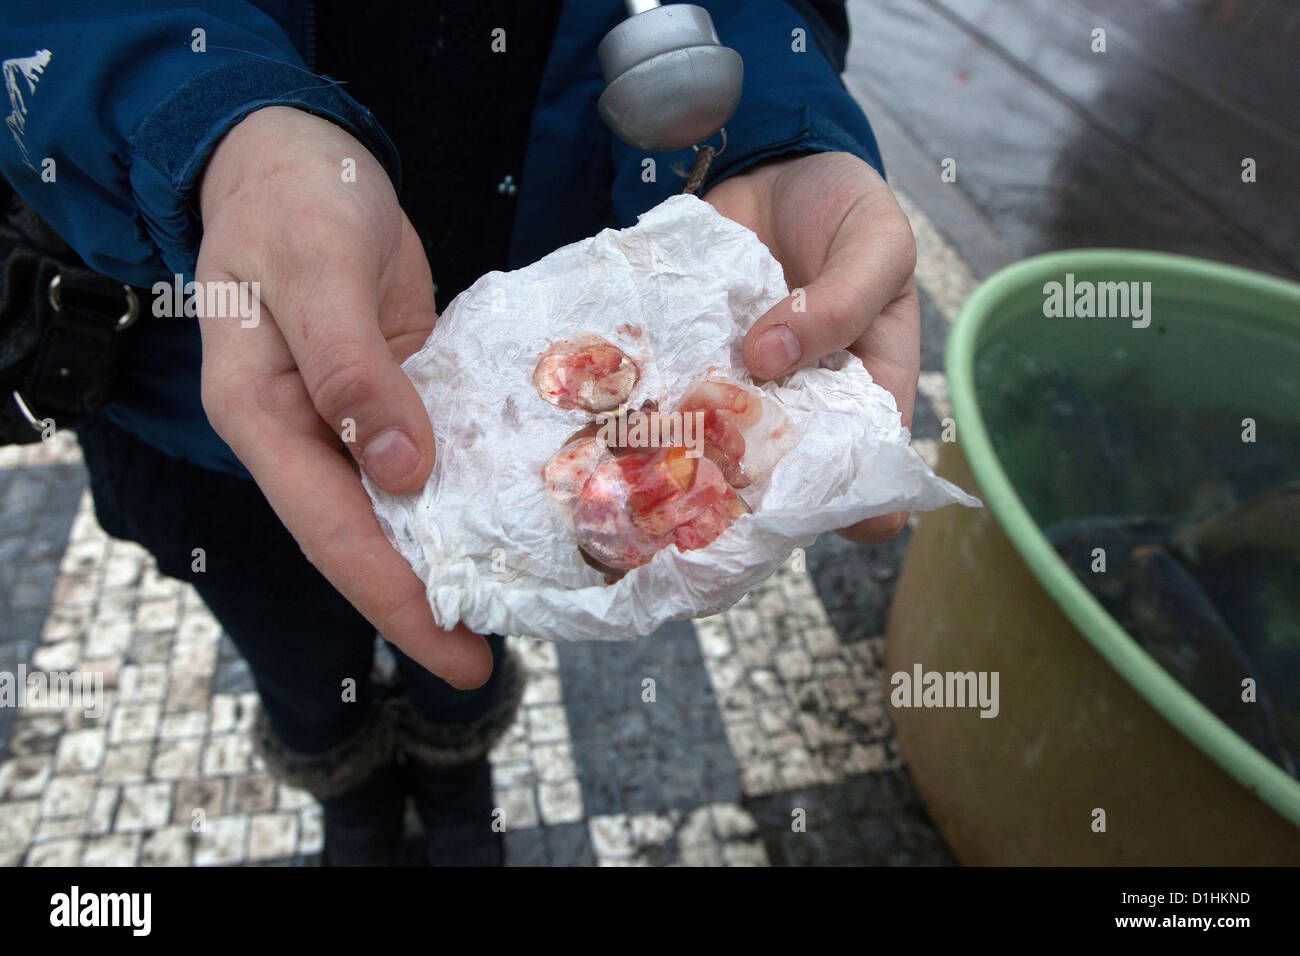 Squame di pesce per la felicità, mercato di Natale la vendita di carpe, Praga, Repubblica Ceca Foto Stock